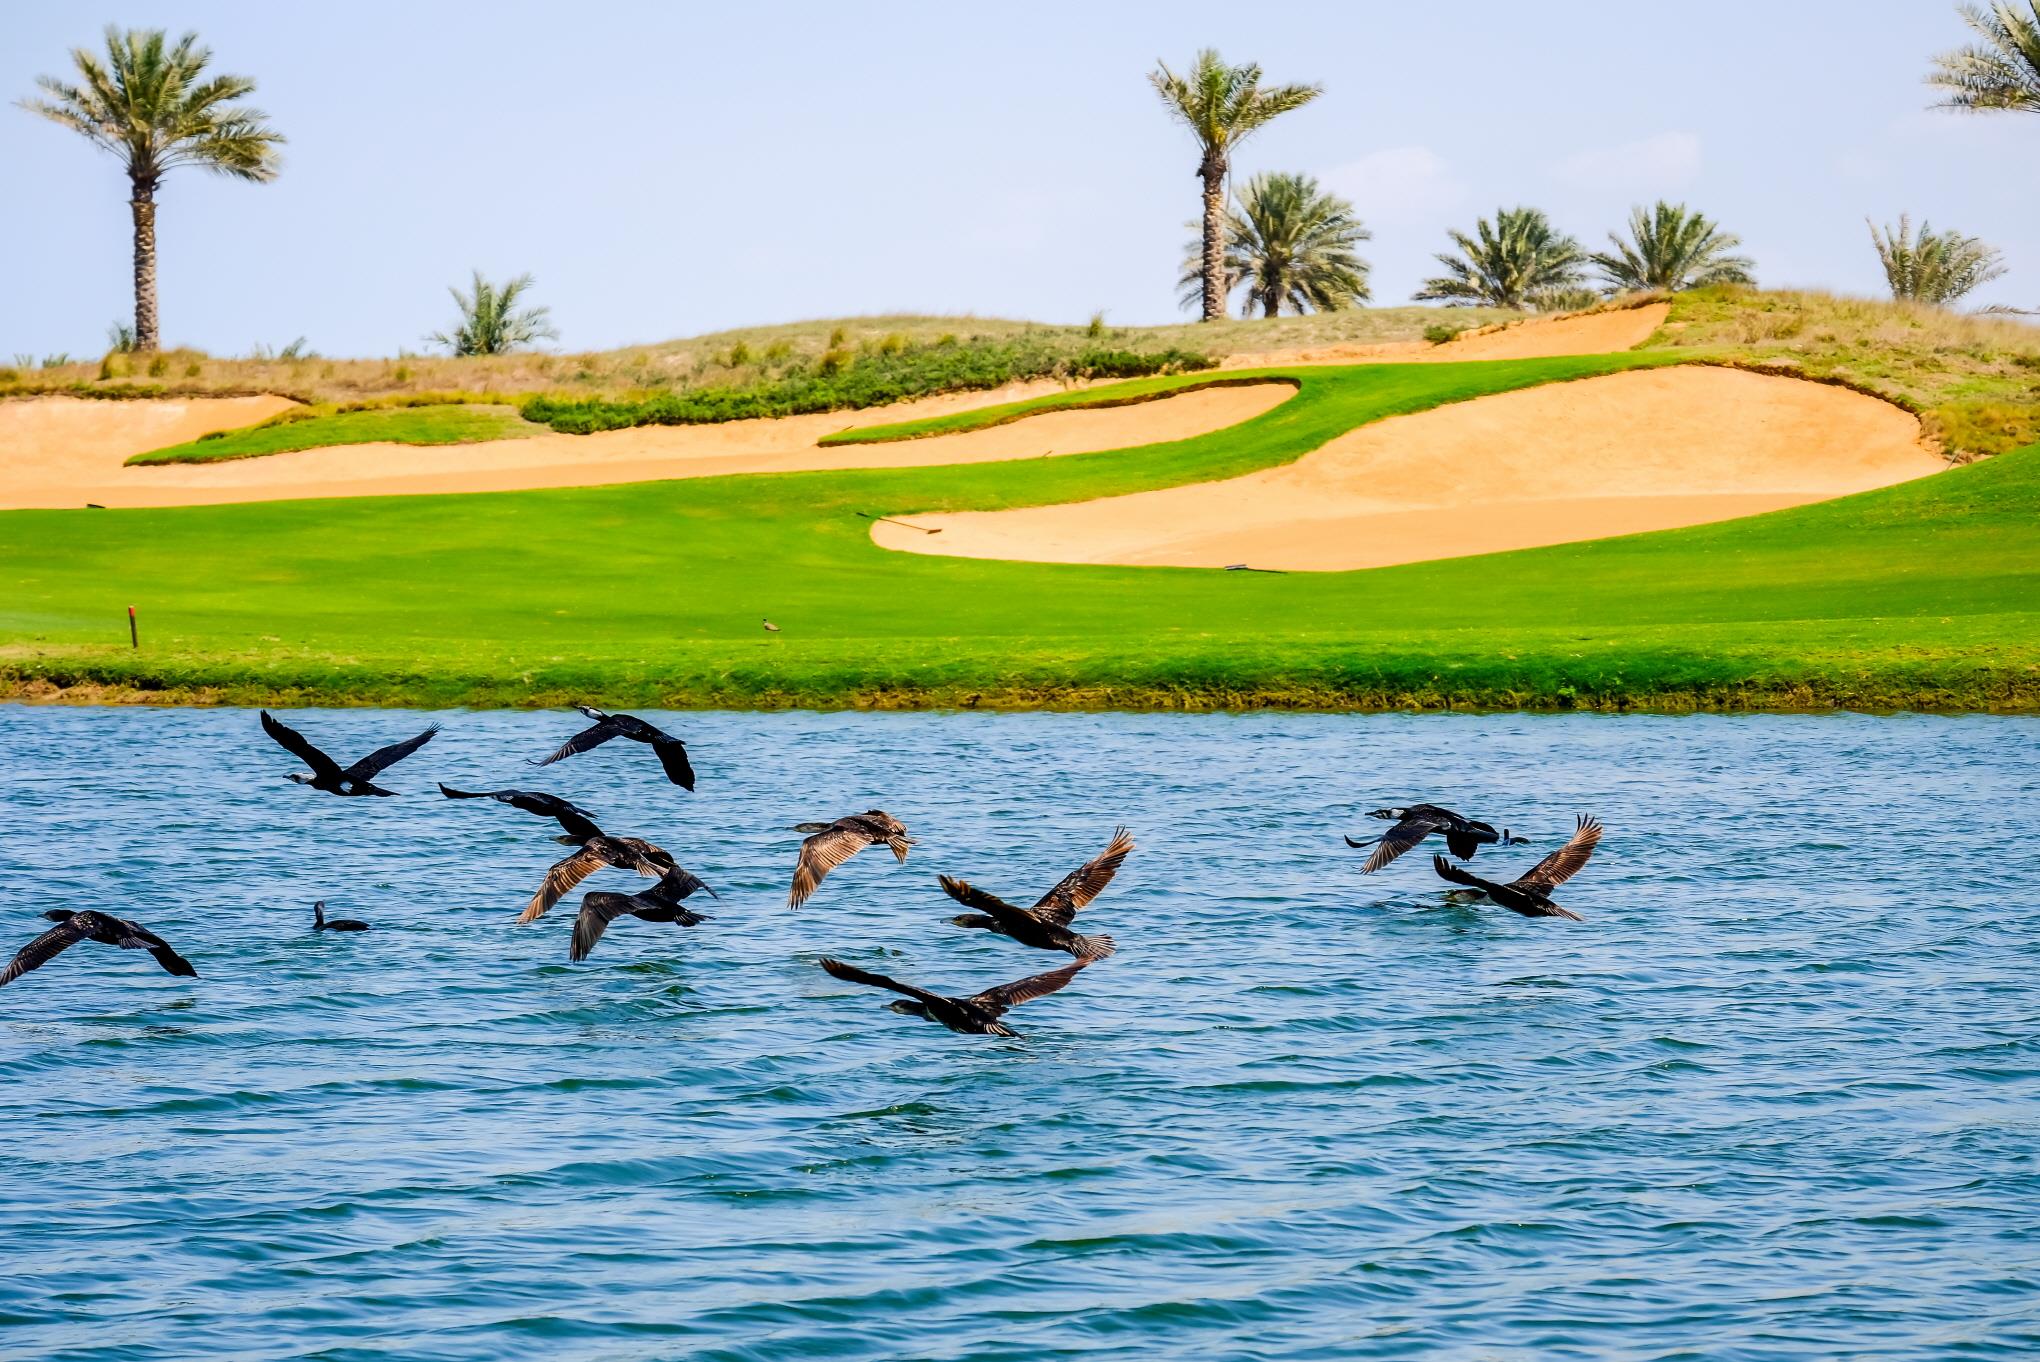 아부다비 골프라운딩  Abu Dhabi golf